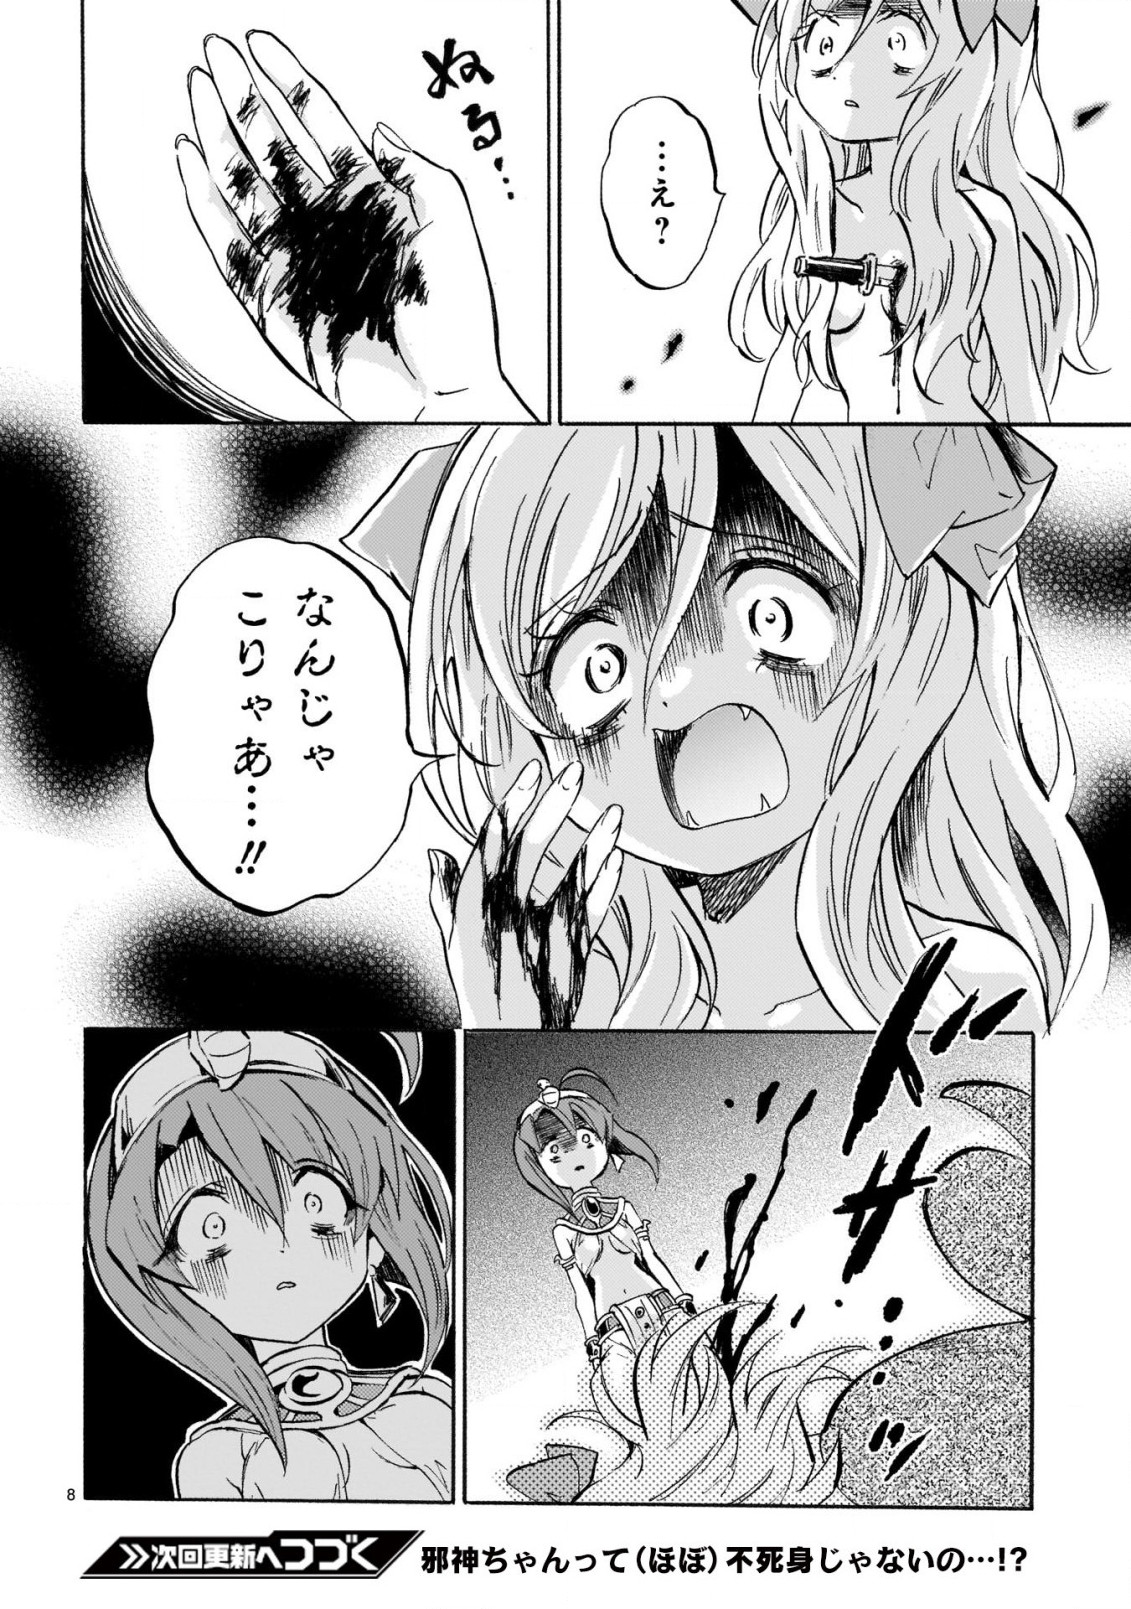 Jashin-chan Dropkick - Chapter 224 - Page 9